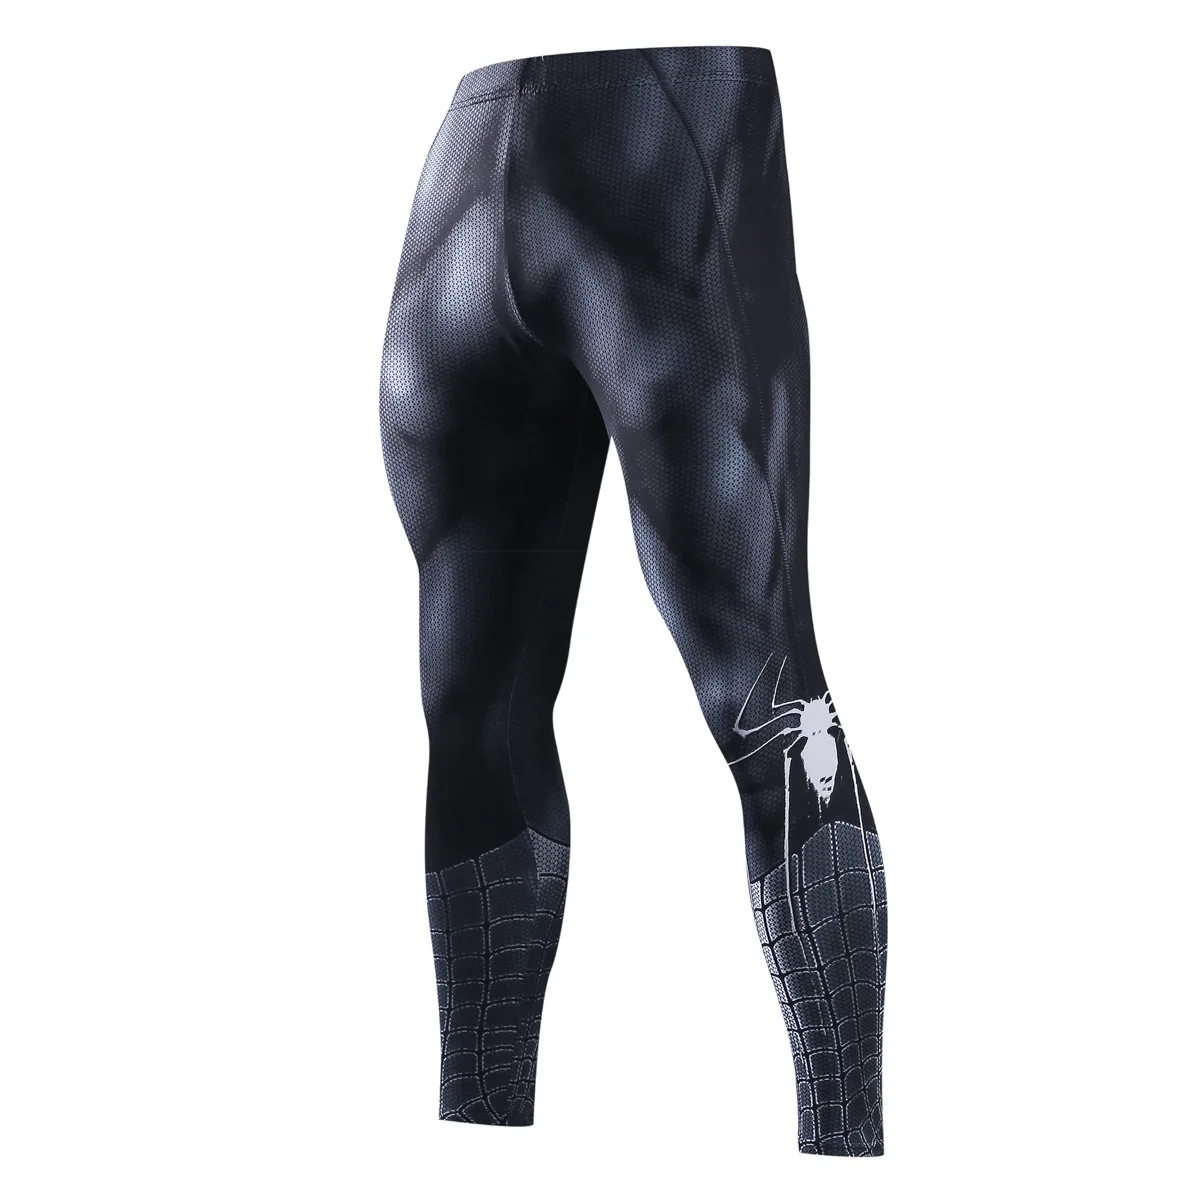 Обтягивающие спортивные штаны для мужчин, компрессионные штаны для мужчин, леггинсы для бега, Мужские штаны для бега, мужские 3D штаны для фитнеса, эластичные брюки Супермена - Цвет: 4